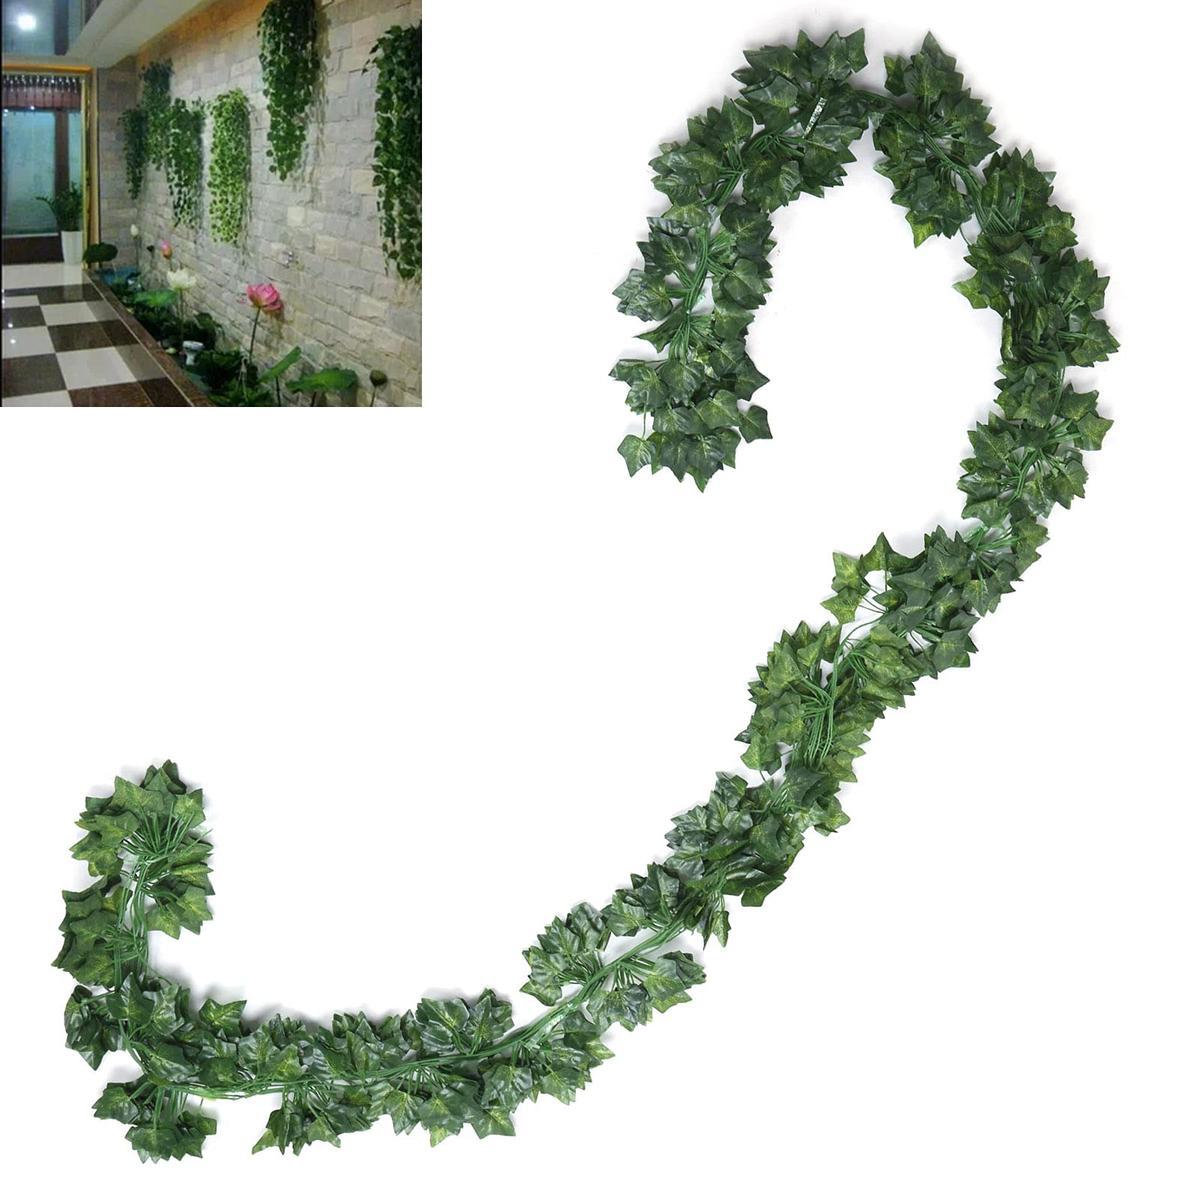 Sztuczny bluszcz Roślina wisząca na ścianę lub balkon Heckermann 3szt / 6,3m 10 Full Screen